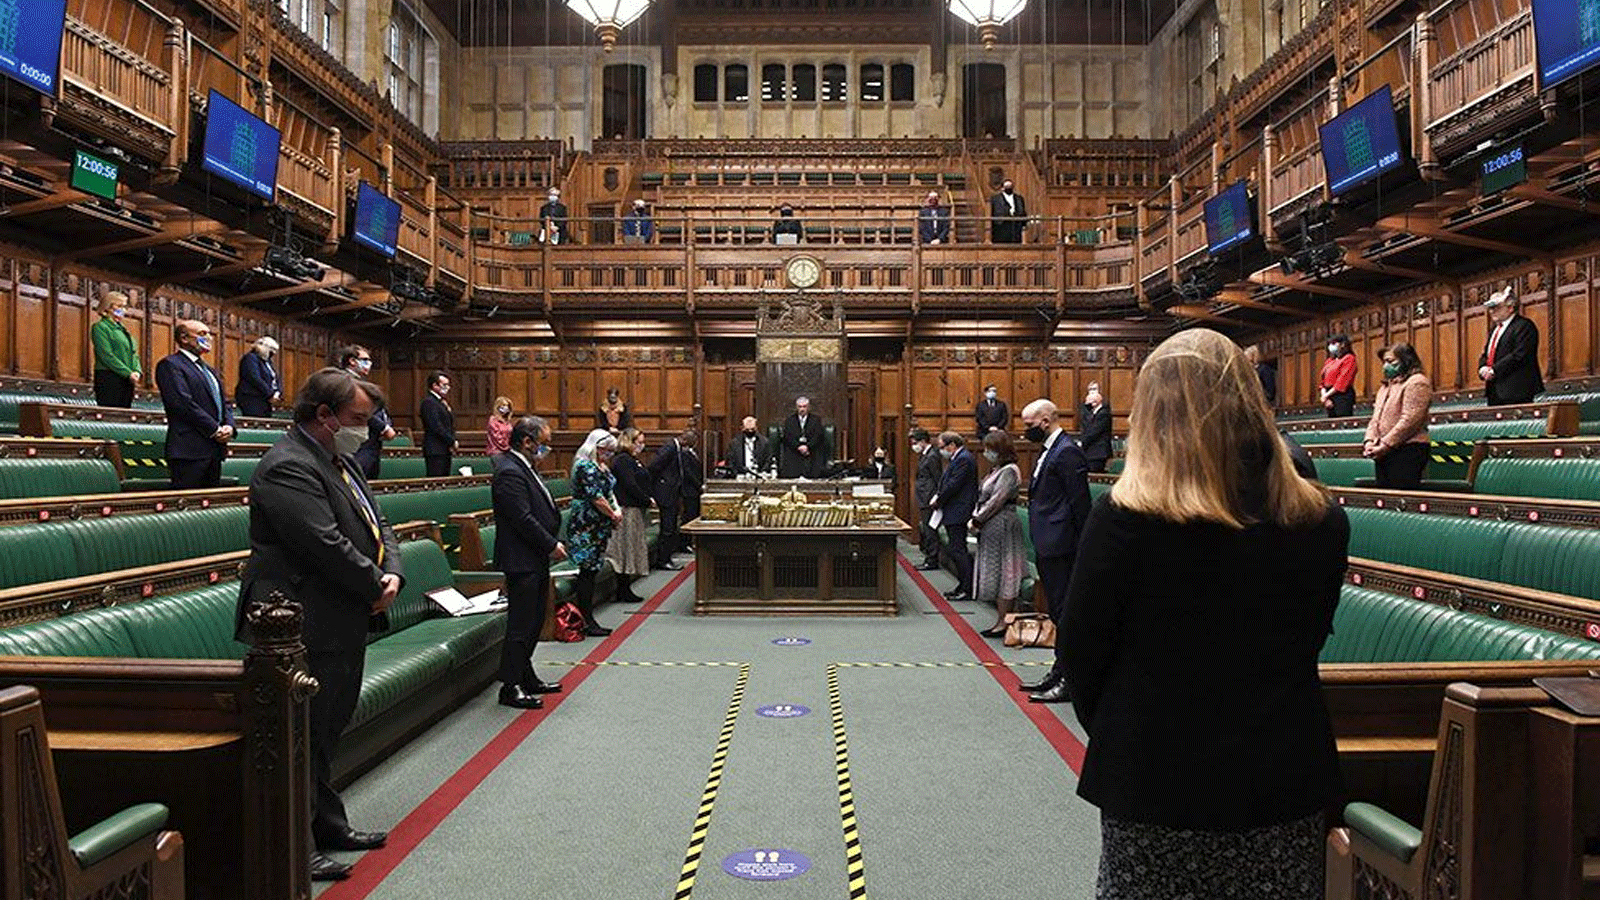  مجلس العموم يقف دقيقة صمت، بمشاركة رئيس الوزراء بوريس جونسون(البرلمان البريطاني)